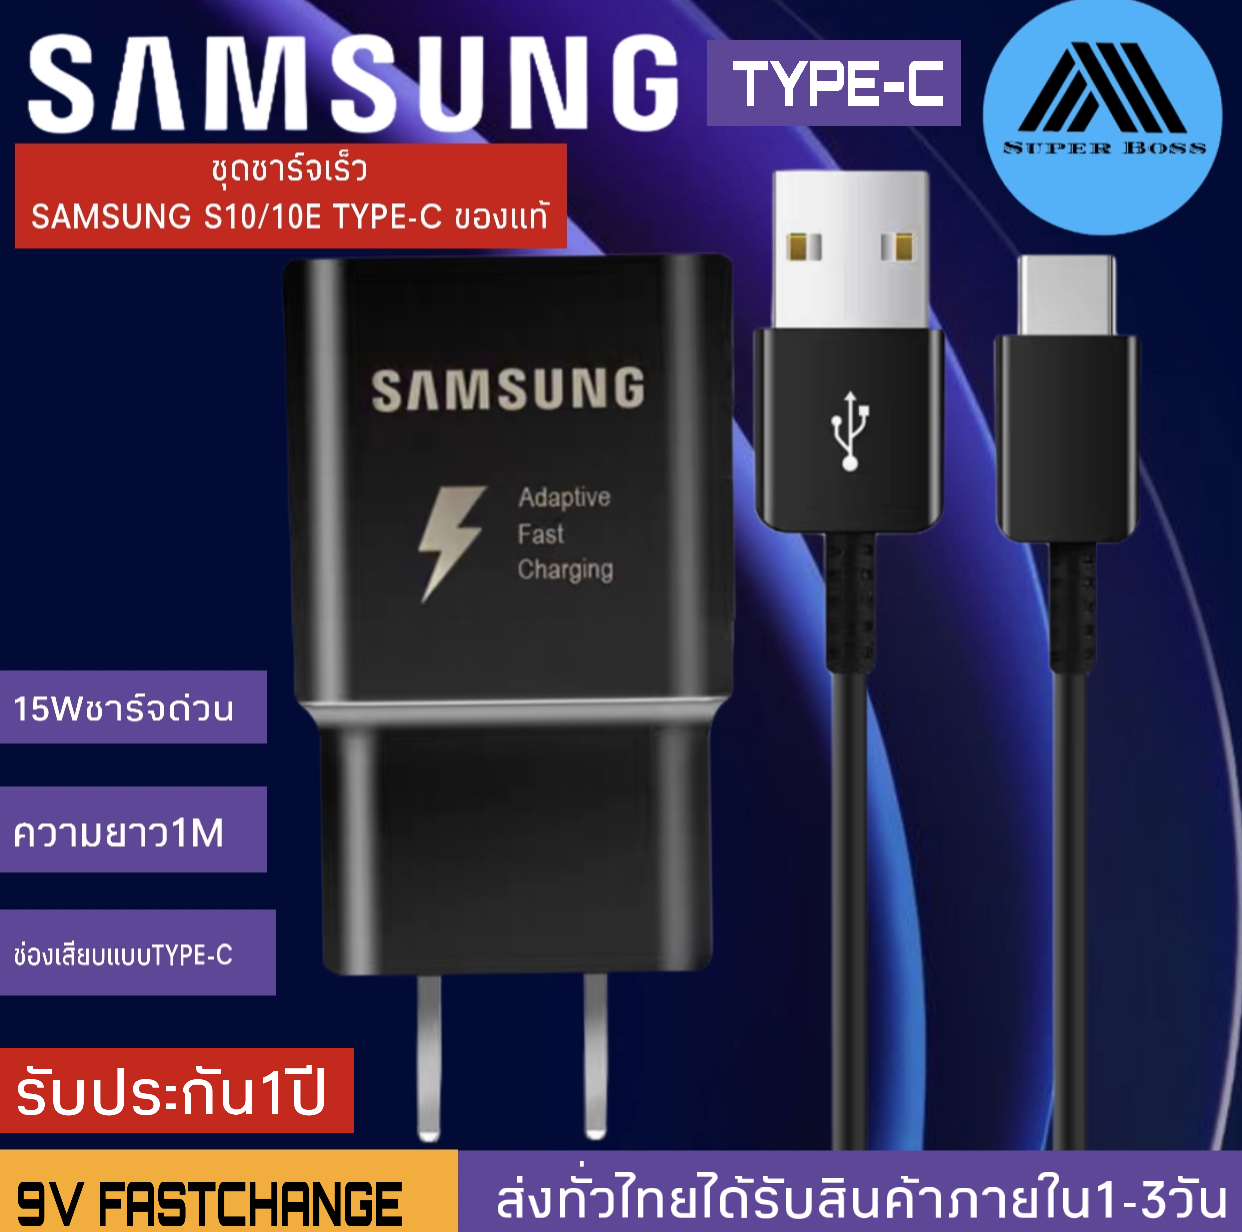 ชุดชาร์จ Samsung S10ของแท้ Adapter Fast Charging รองรับ รุ่นS8/S8+/S9/S9+/S10/S10E/G9500/G9600/A8S/A9 star/A9+/C5pro/C7pro/C9pro/note8/note9 รับประกัน1ปี BY SUPER-BOSS